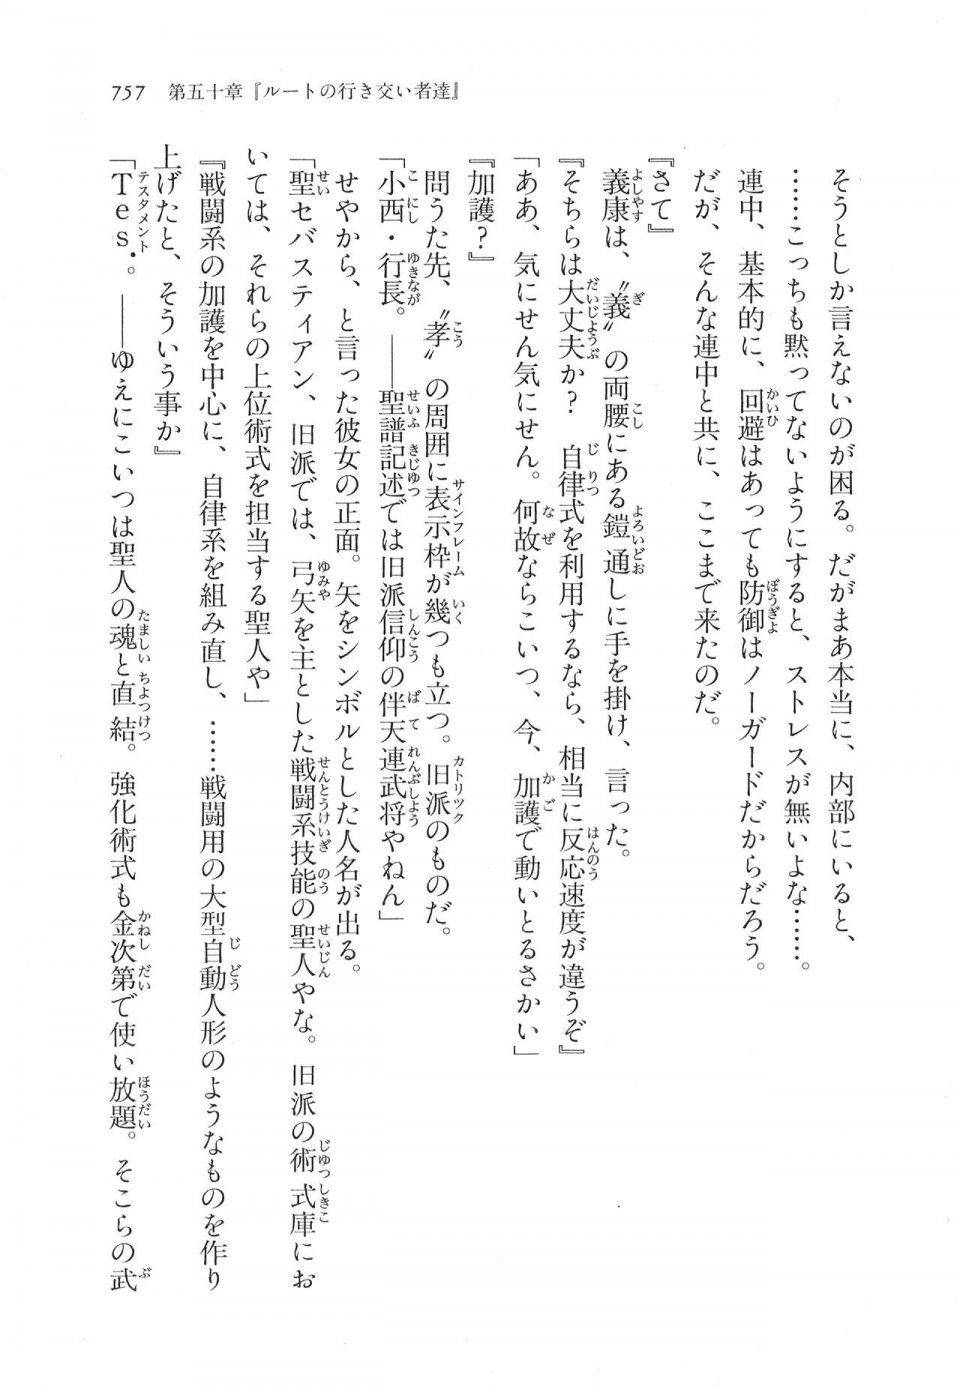 Kyoukai Senjou no Horizon LN Vol 17(7B) - Photo #759